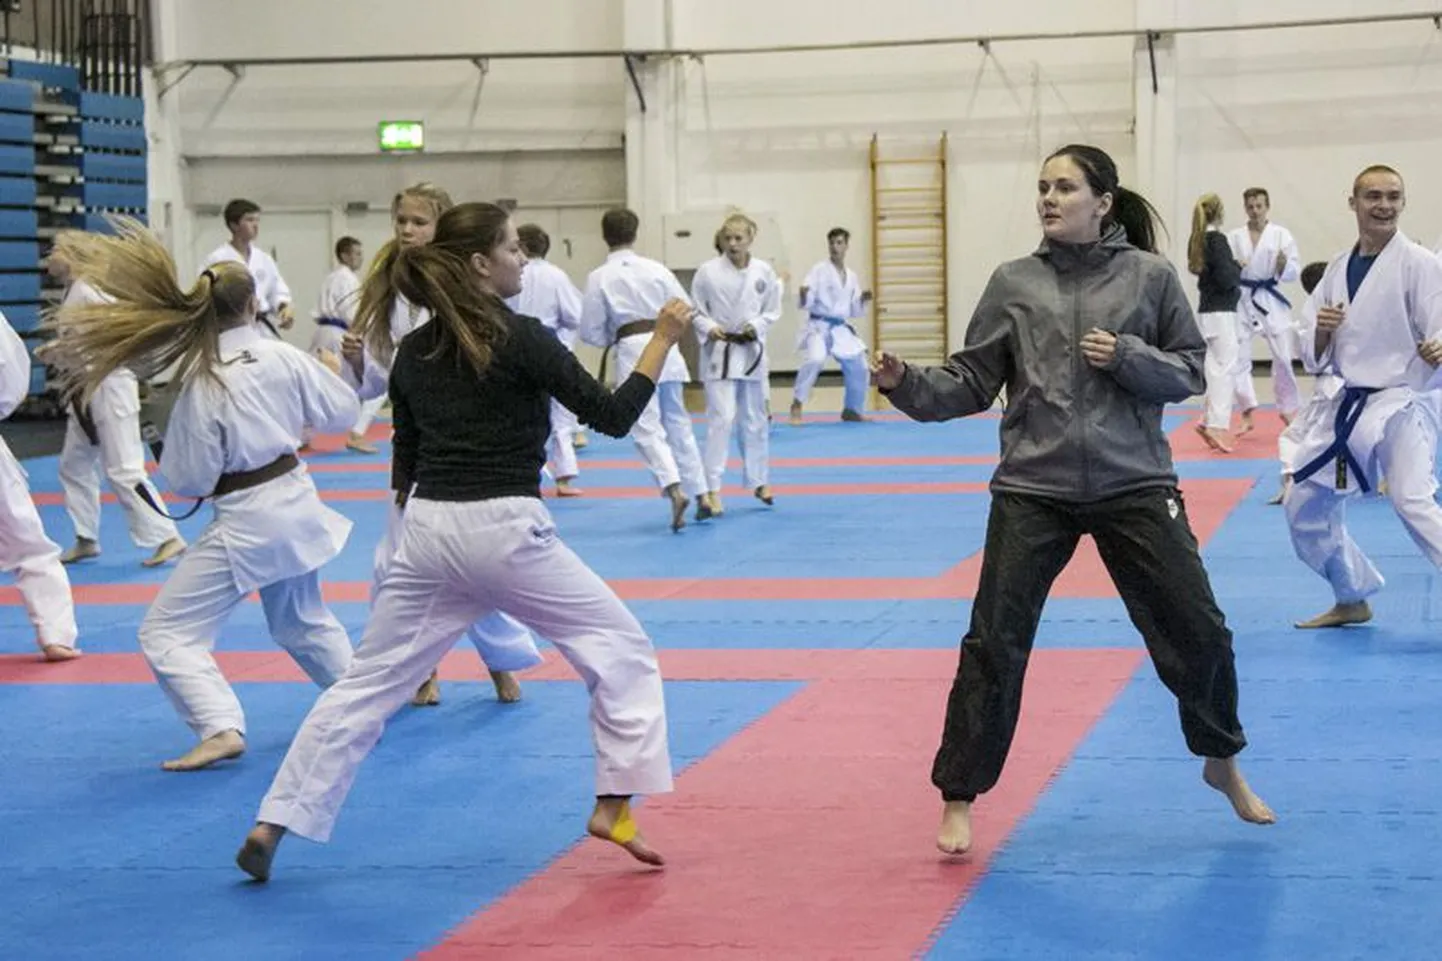 Eelmisel nädalal toimus Rakvere spordihallis noortelaager “Et suvi ei läheks luhta”, kus lapsed said aimu, milline spordiala on karate.